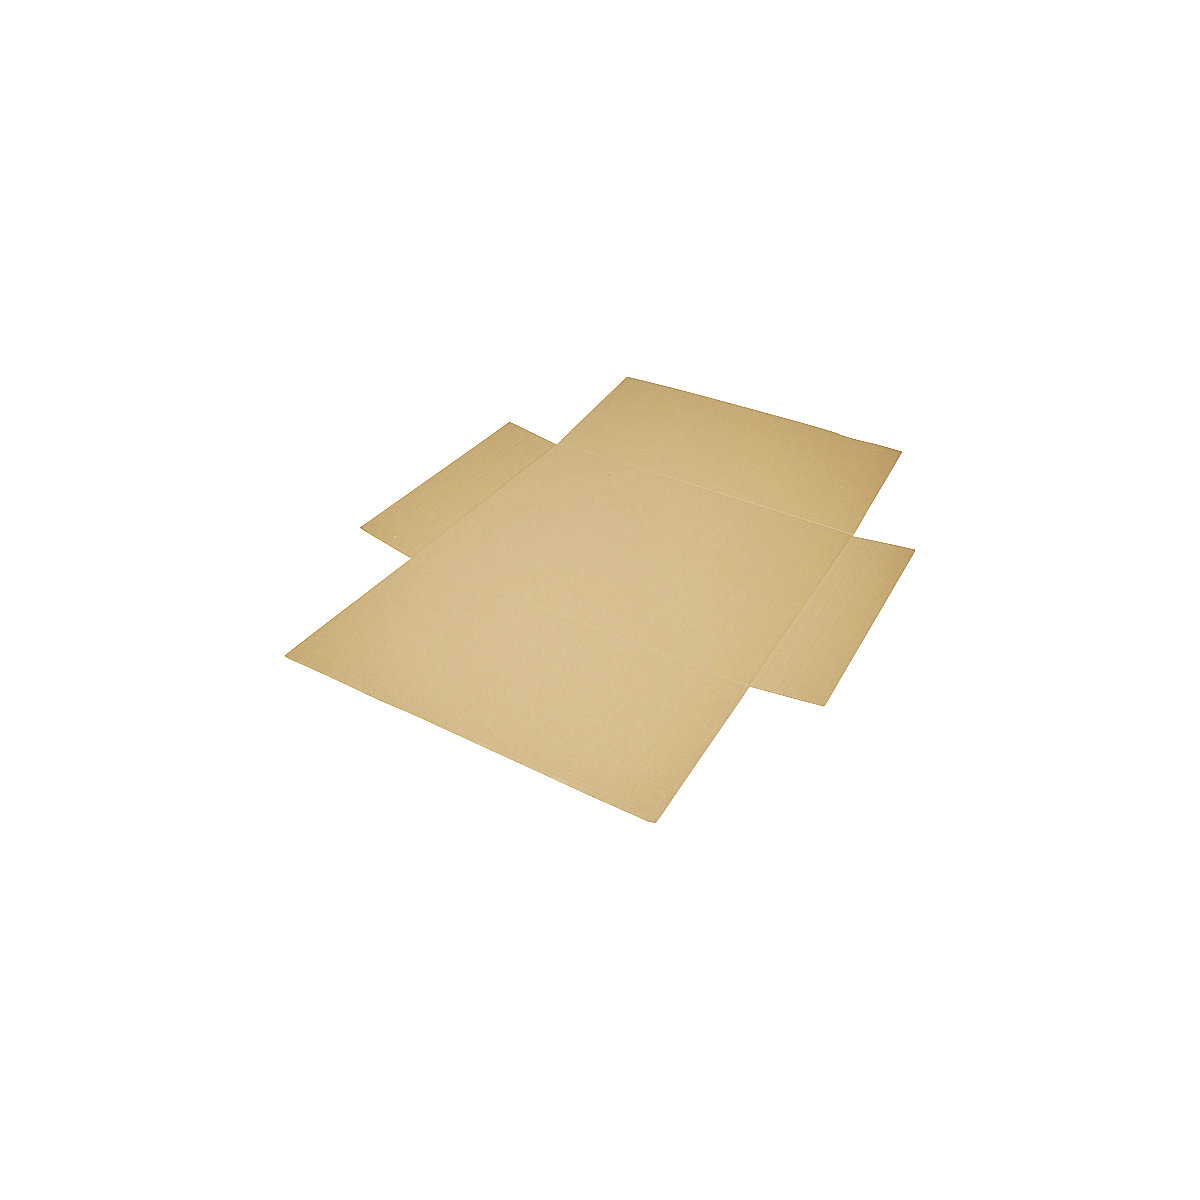 Imballaggio incrociato, in pezzo unico, a 1 parete, marrone, lungh. x largh. 600 x 425 mm, altezza di riempimento 50 mm, a partire da 150 pz.-6